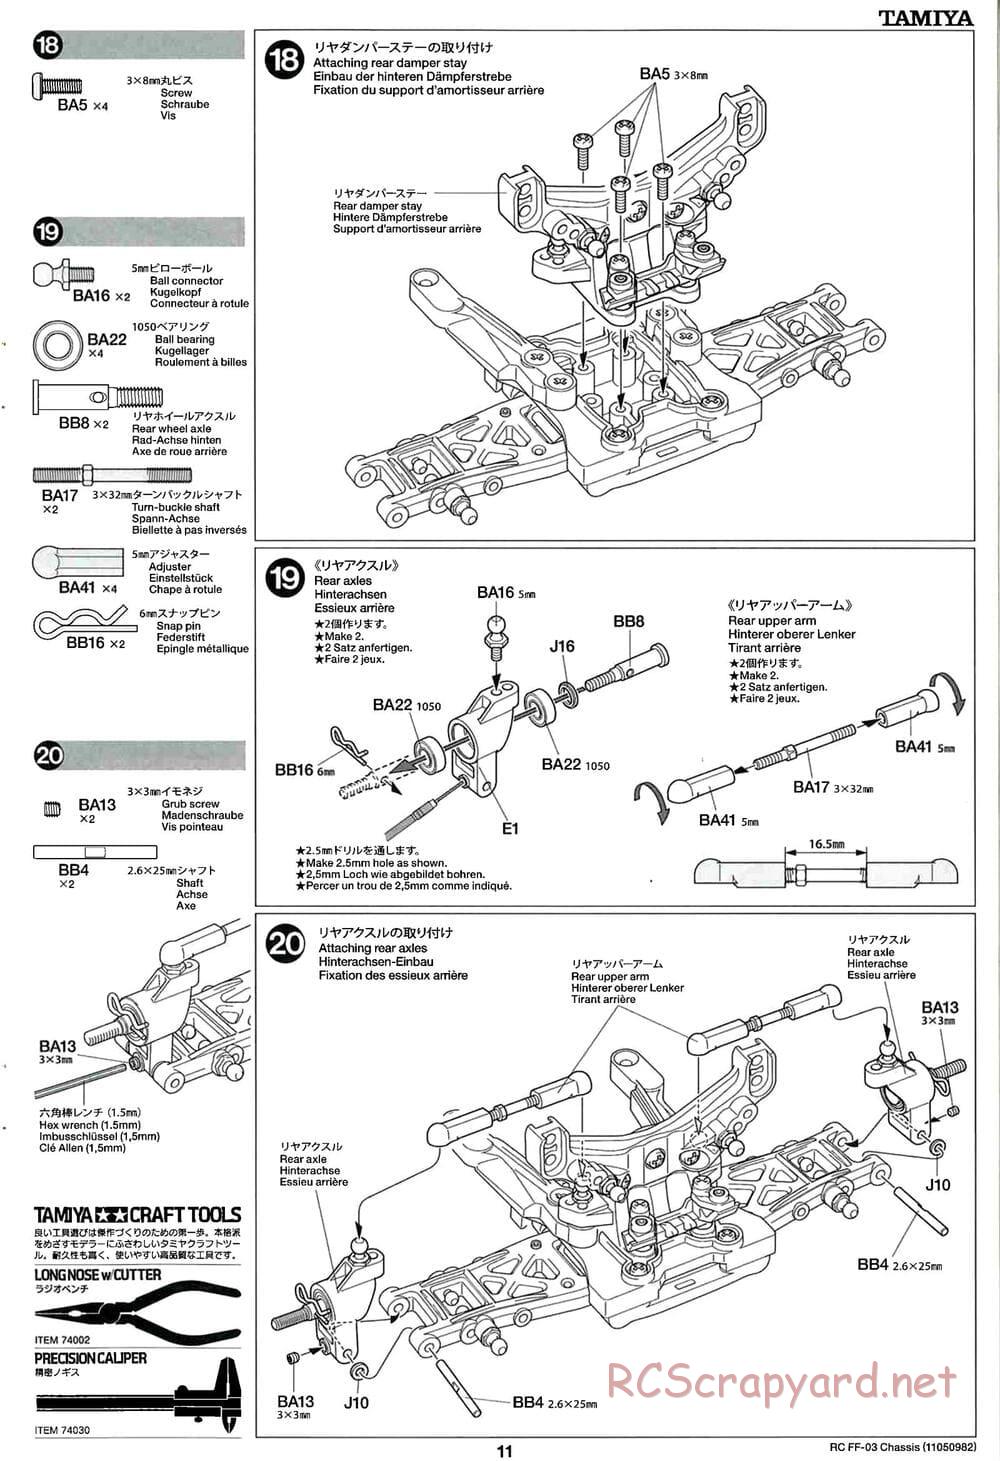 Tamiya - Honda CR-Z - FF-03 Chassis - Manual - Page 11